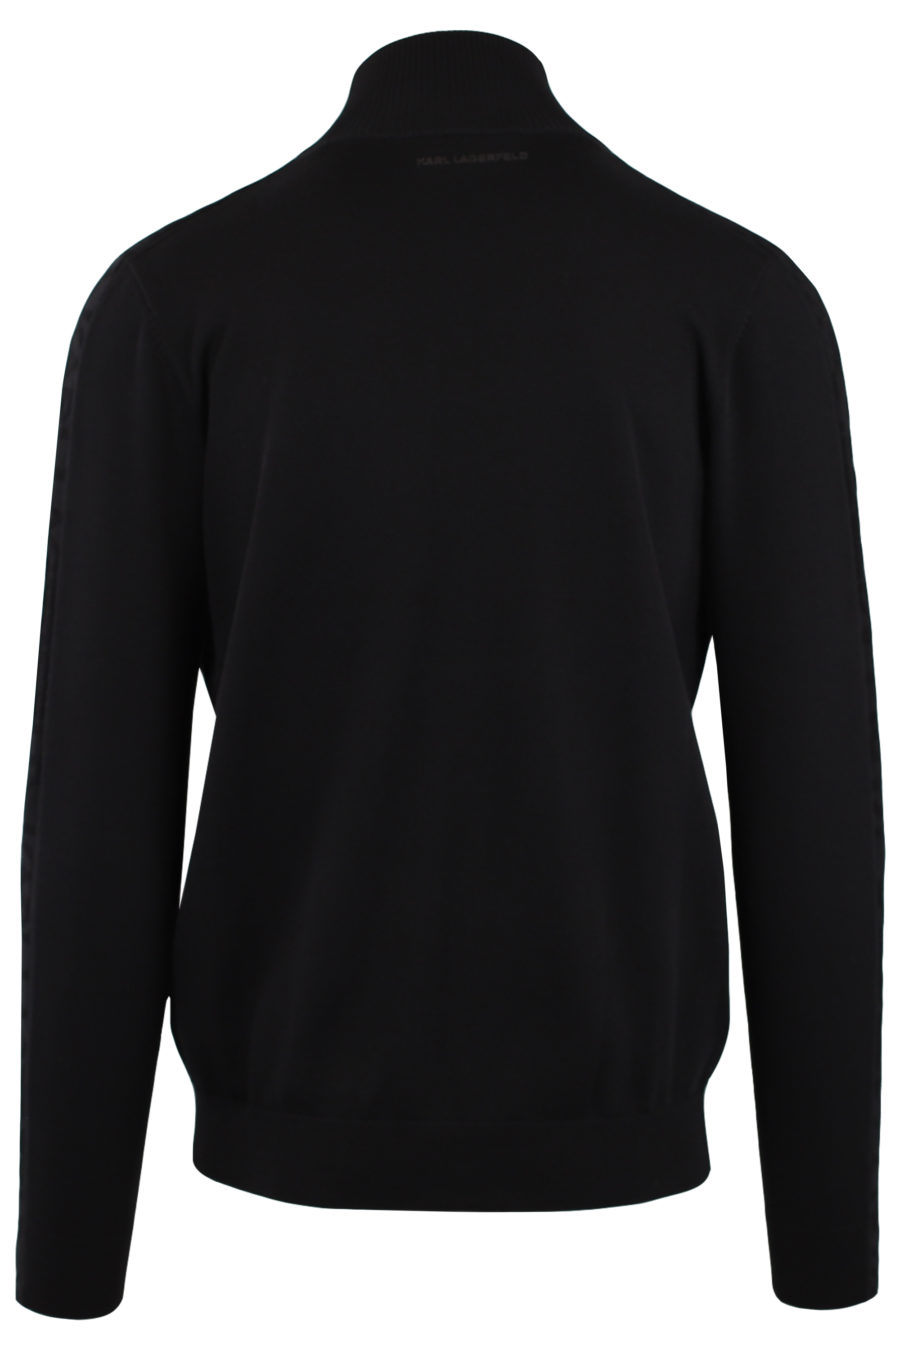 Camisola preta com fecho de correr e logótipo "Karl" em borracha - IMG 9158